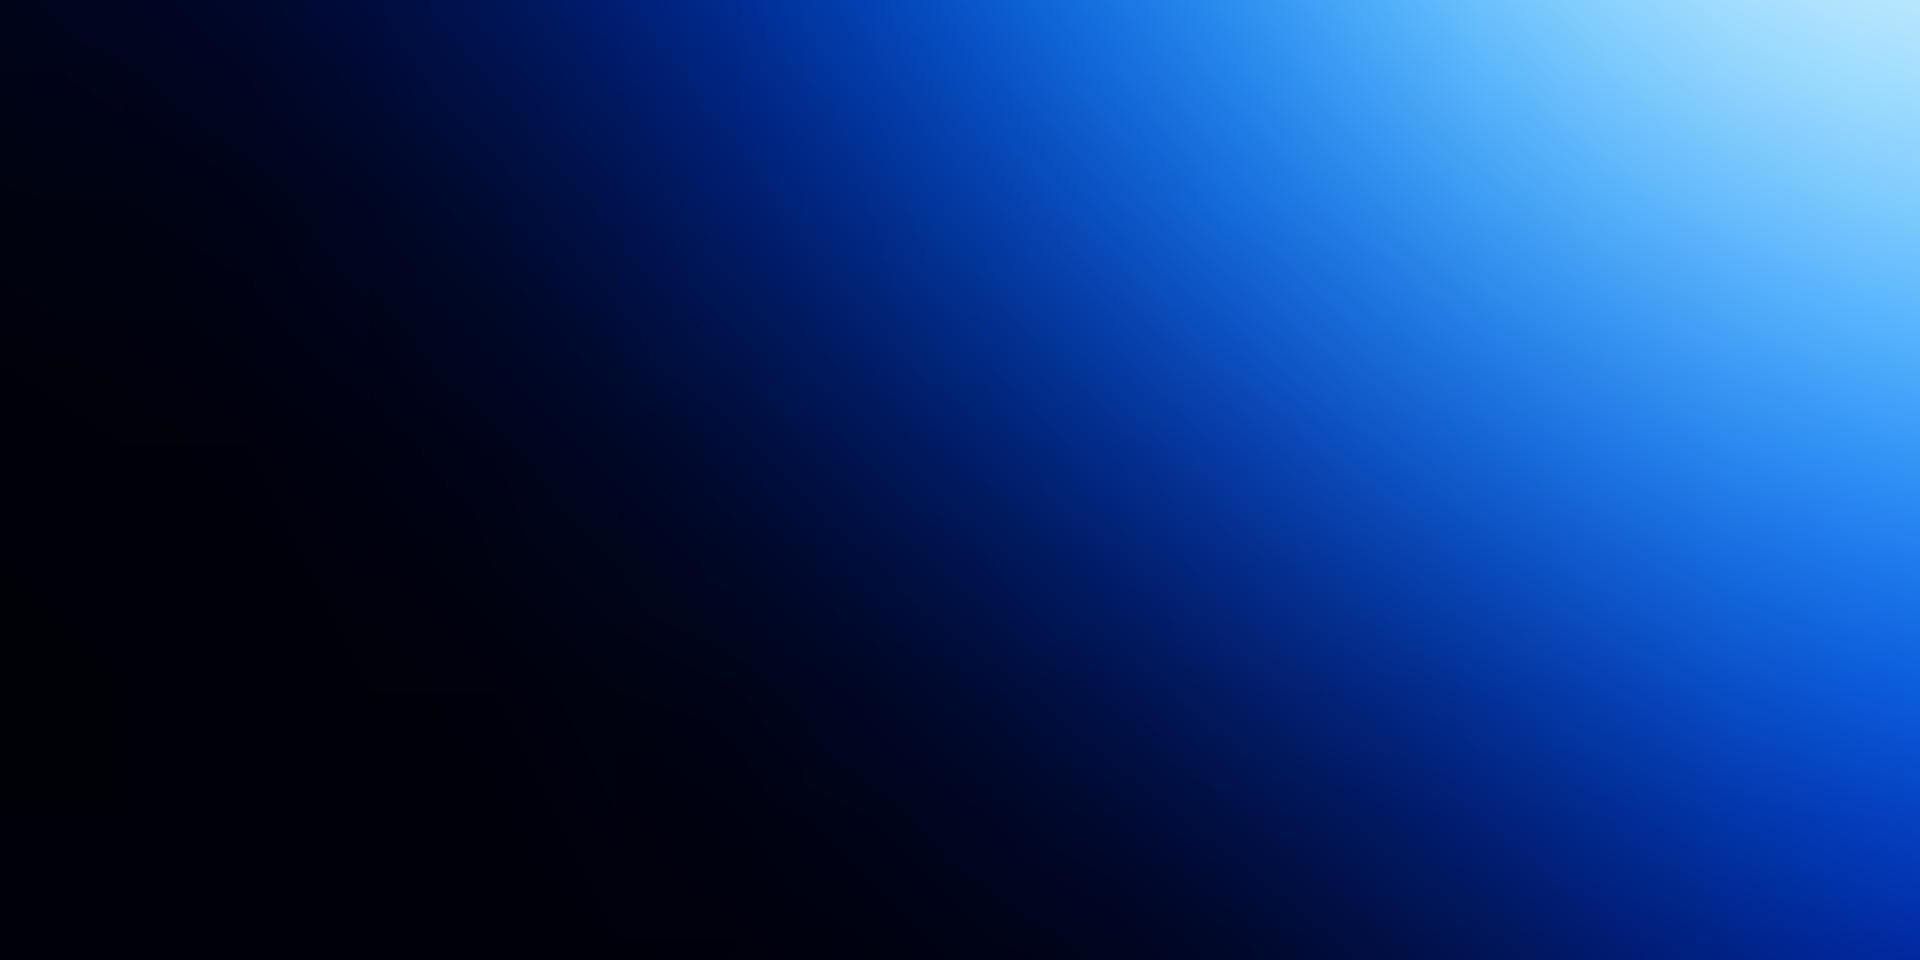 patrón borroso vector azul oscuro.